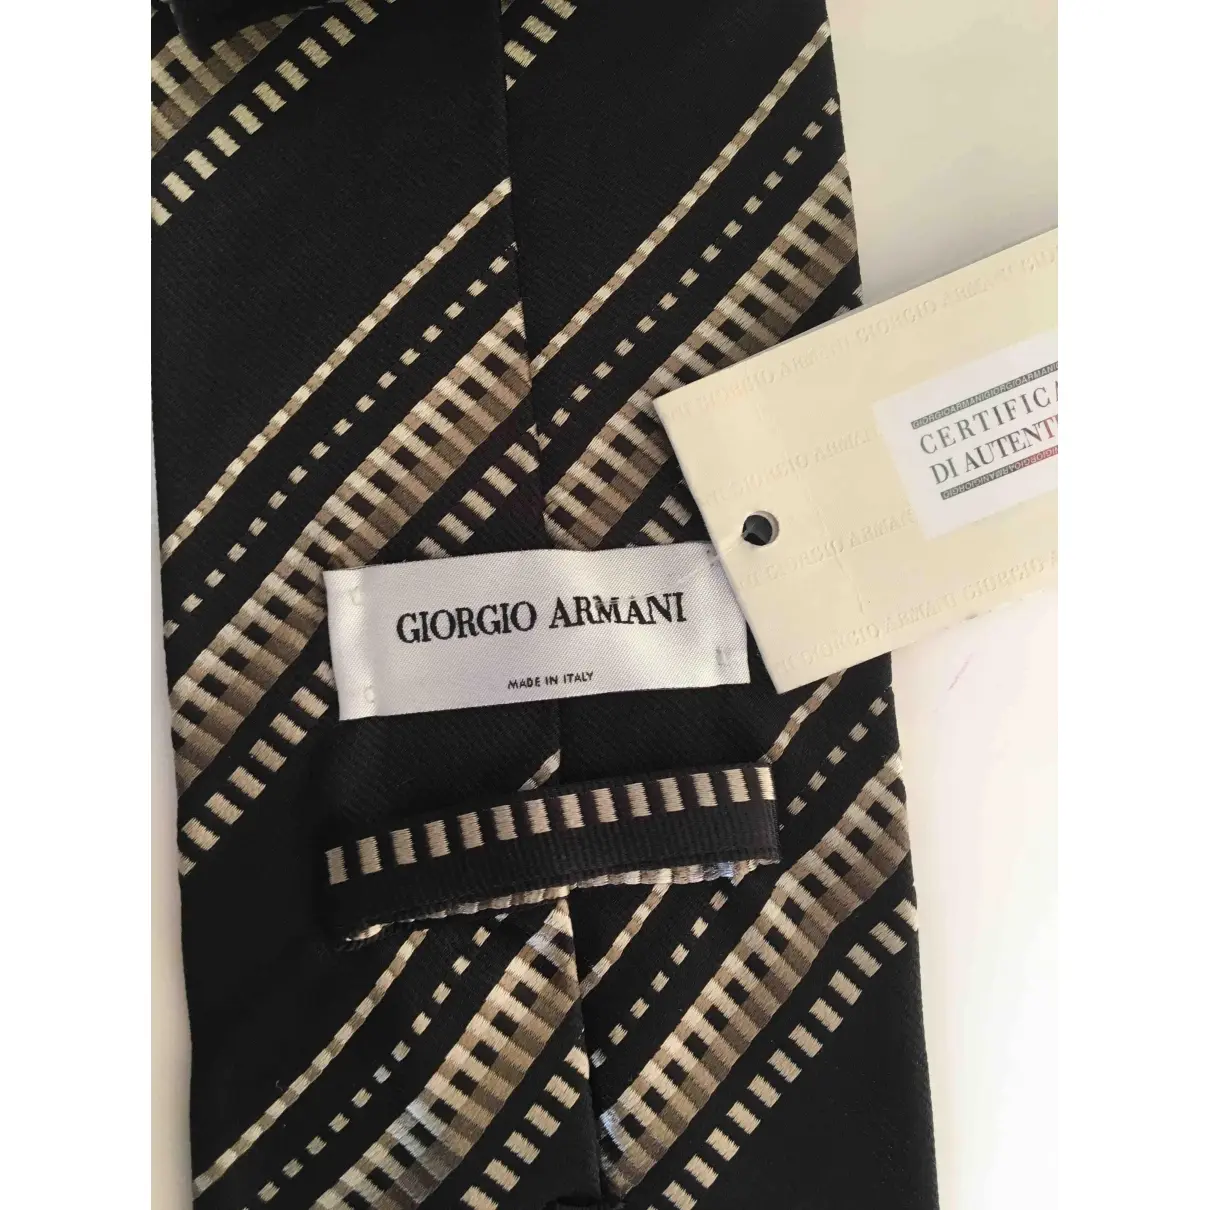 Giorgio Armani Silk tie for sale